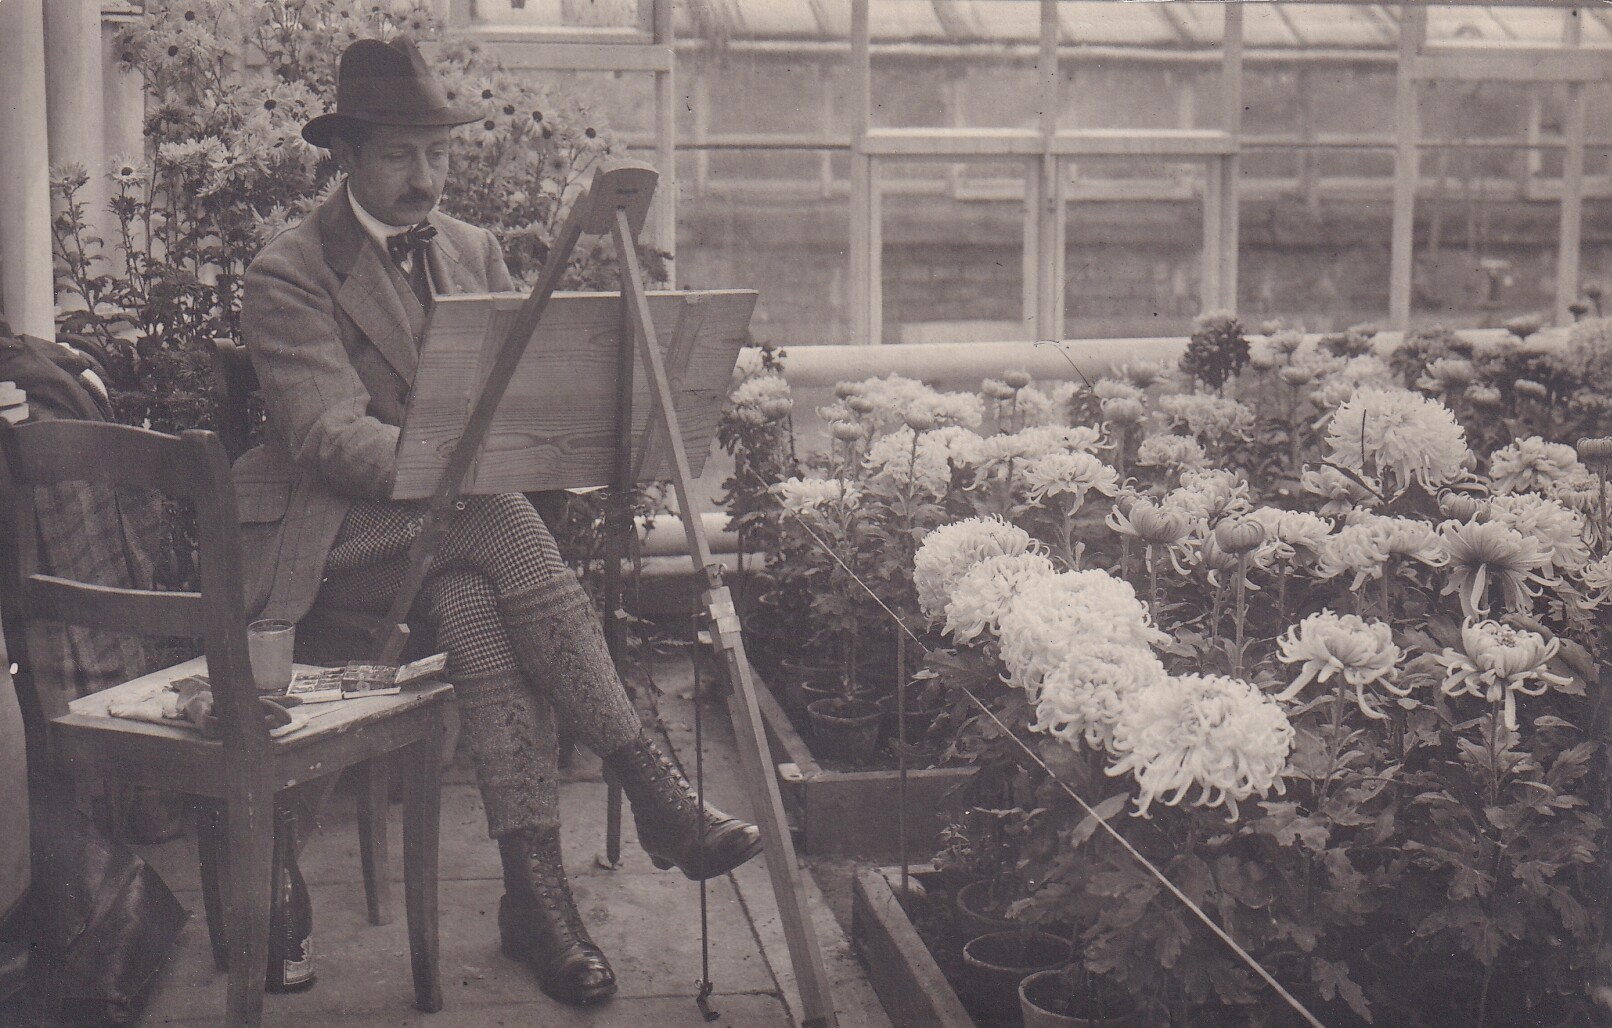 Bildpostkarte mit Foto von August Wilhelm Prinz von Preußen (1887-1949) beim Malen in einem Gewächshaus, 1922 (Schloß Wernigerode GmbH RR-F)